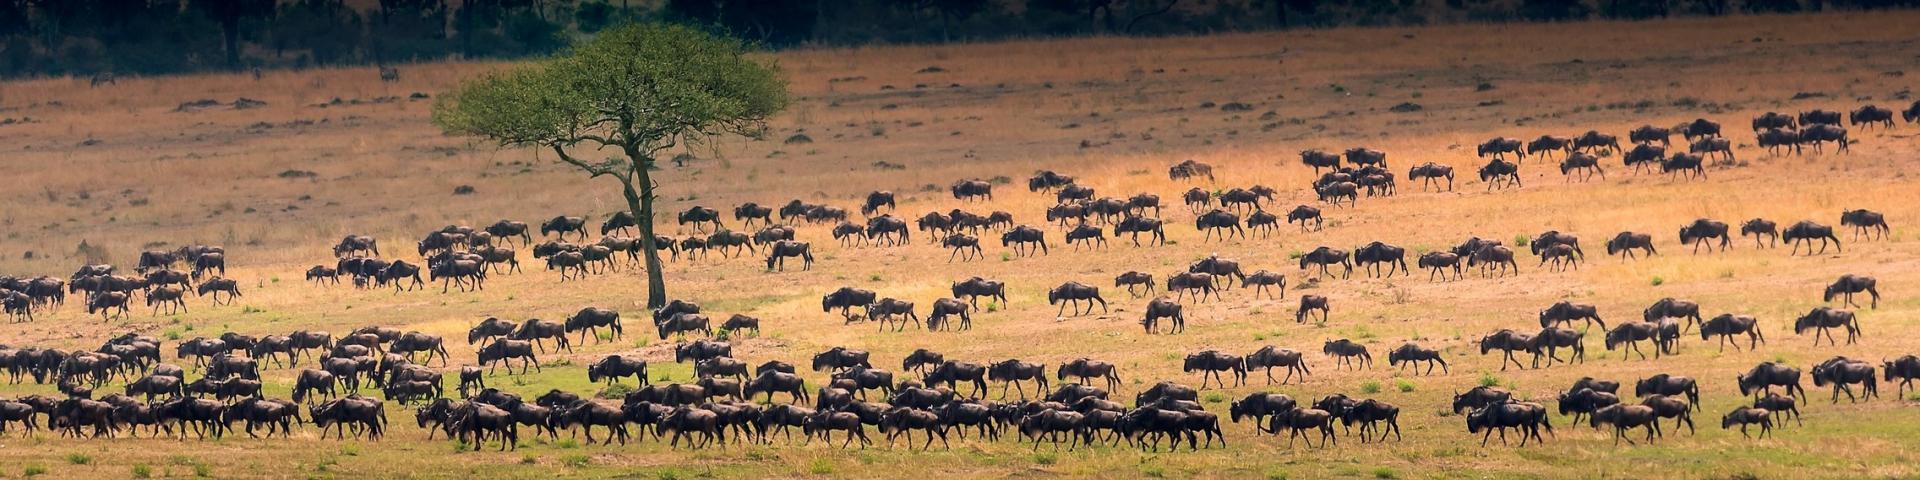 Serengeti w Tanzanii - prywatne safari, sprawdzone lodge i campy